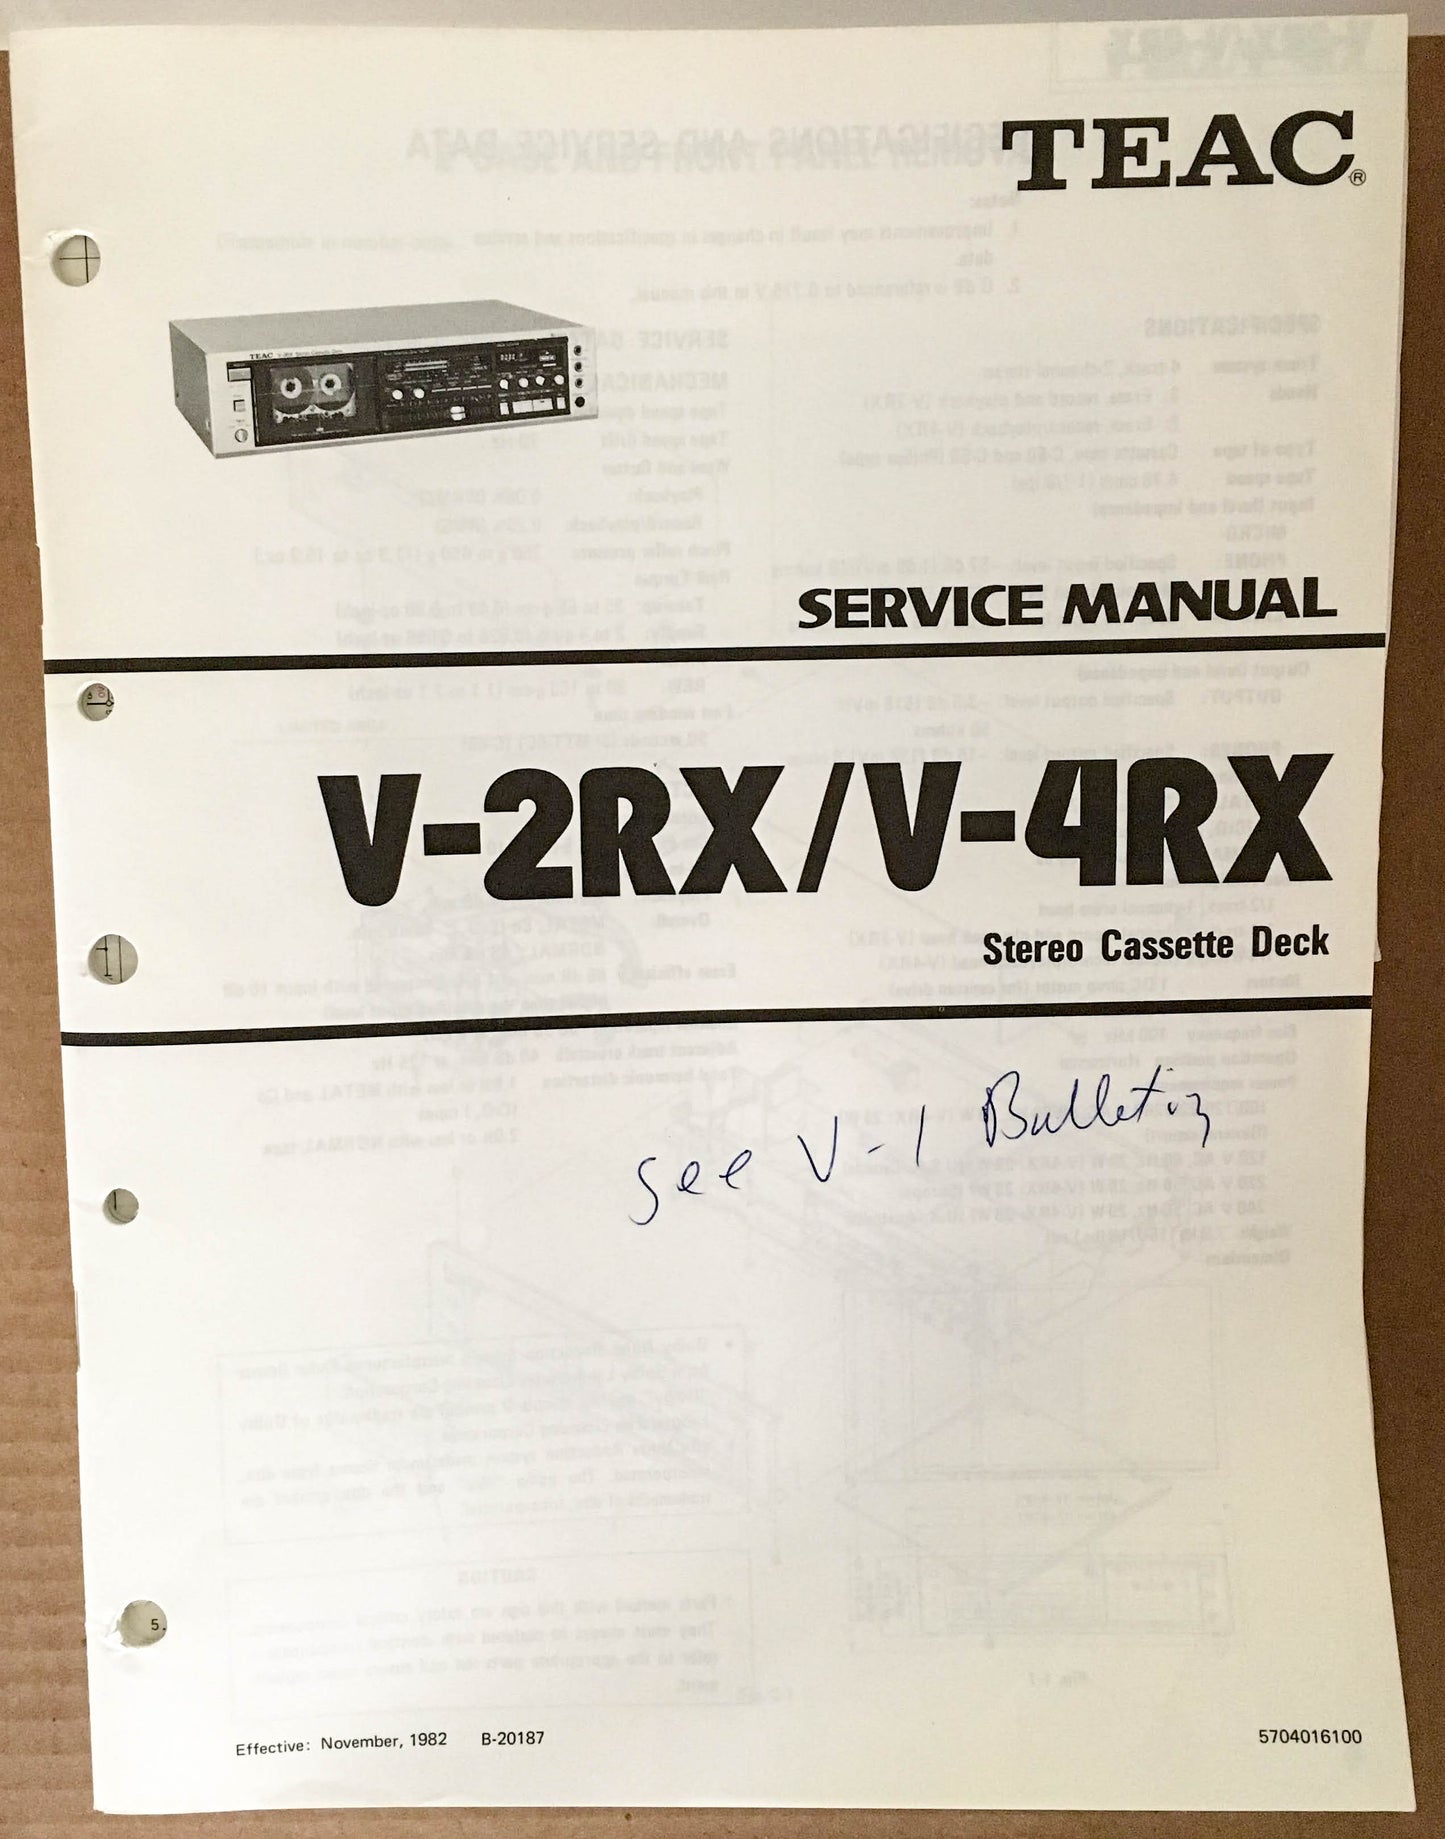 Teac V-2RX / V-4RX Stereo Cassette Deck Service Manual *Original* #1